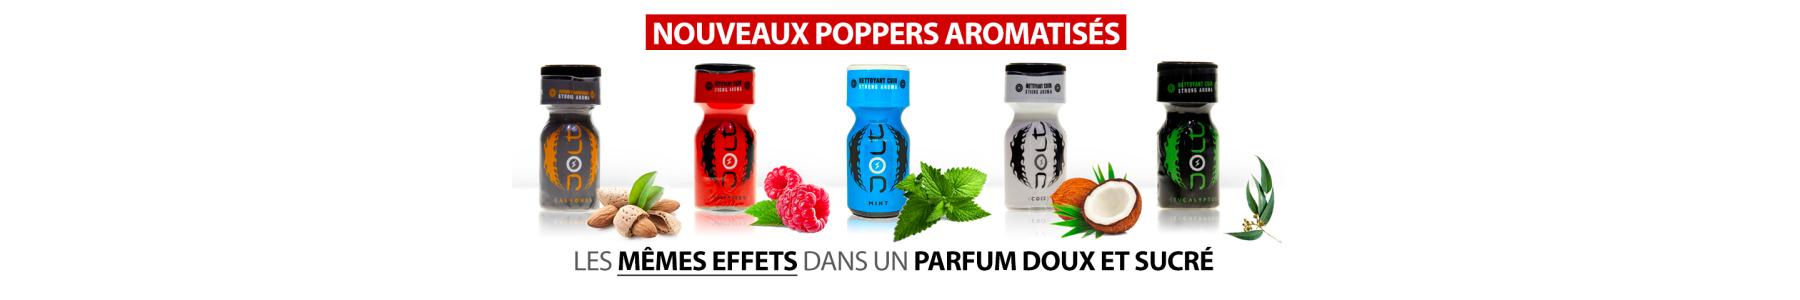 Aromatisierte Poppers: Minze, Erdbeere...